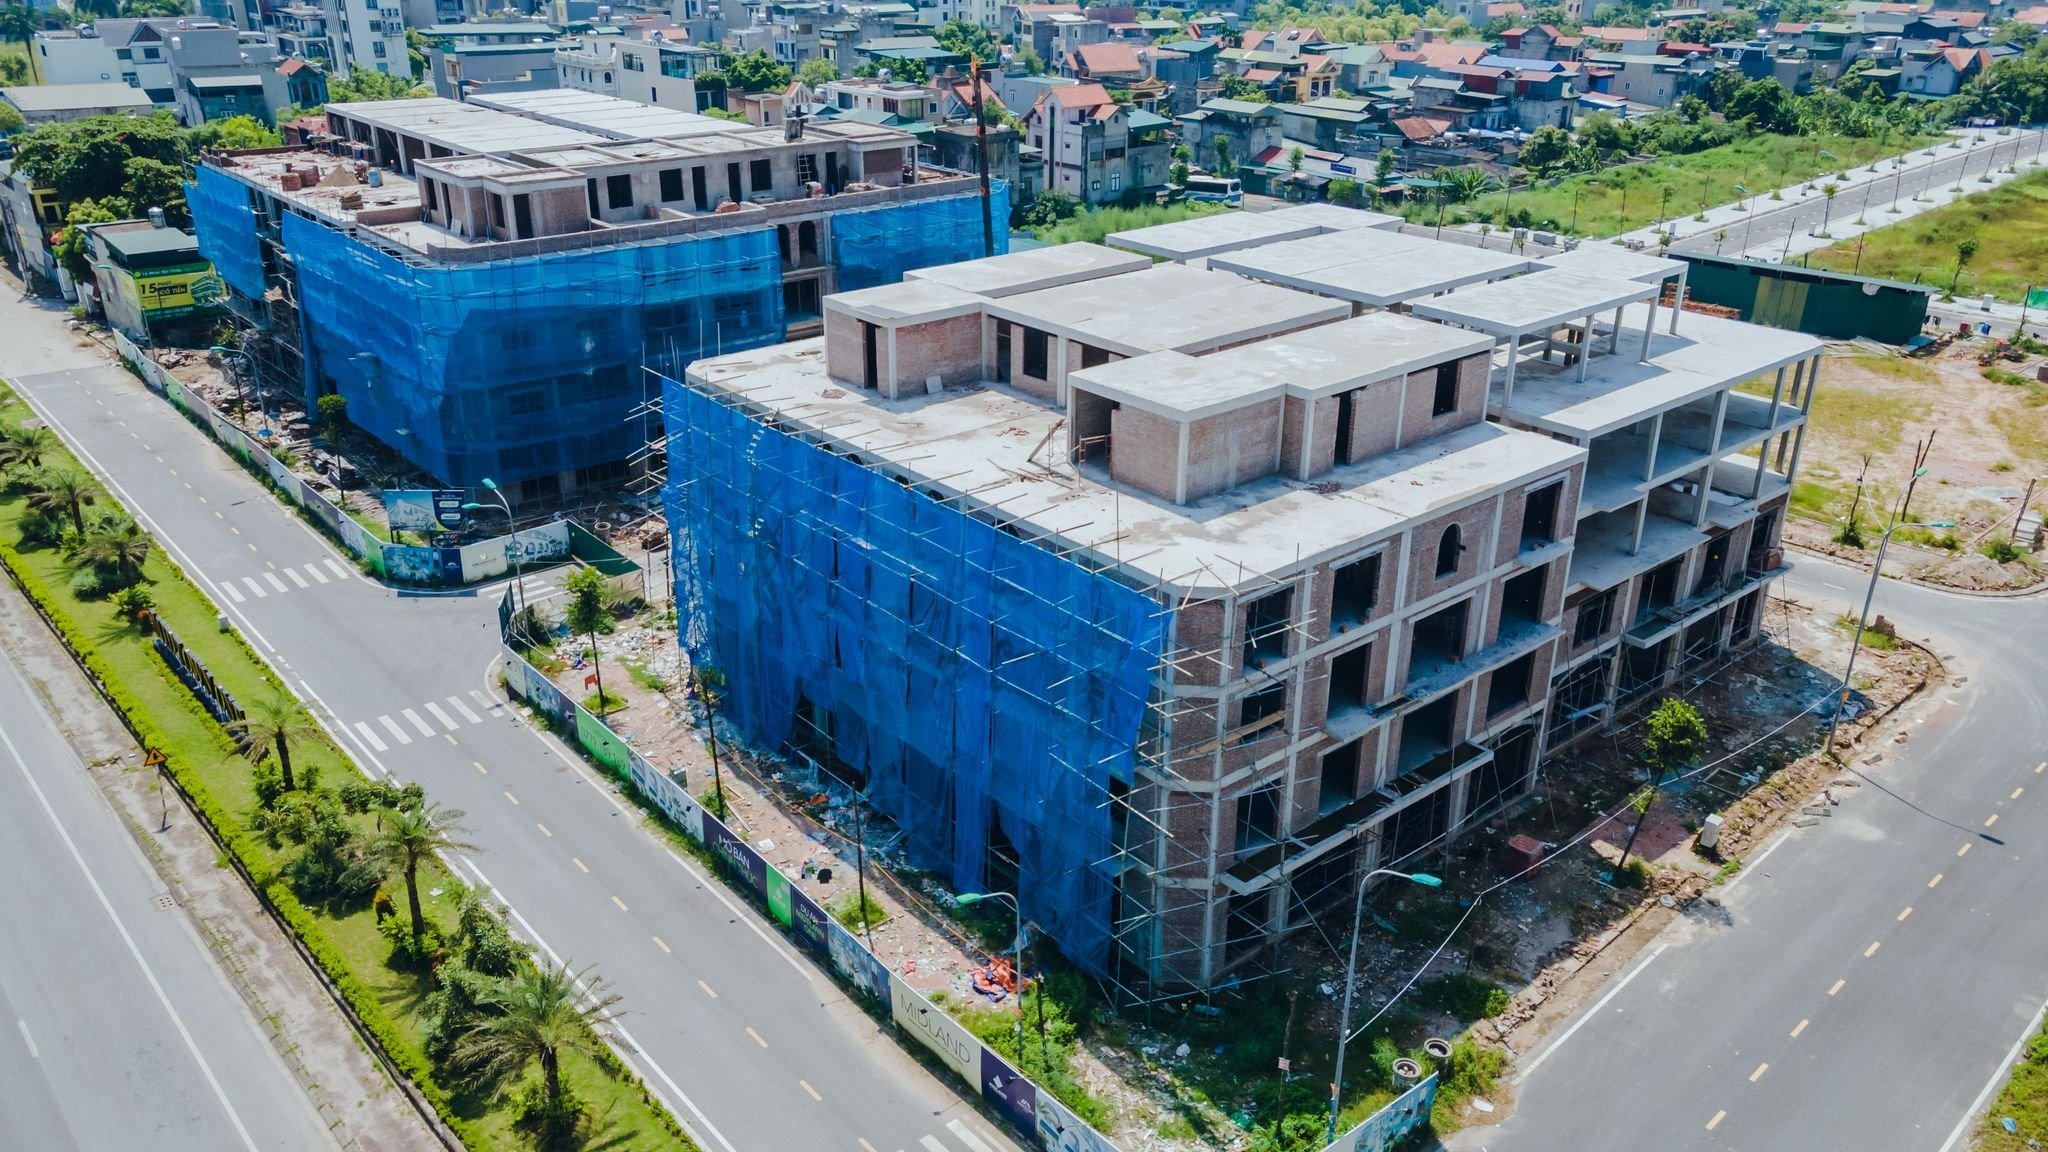 CHÍNH CHỦ bán nhanh căn nhà nghỉ khách sạn xây 5 tầng mặt đường 60m, thành phố Uông Bí - Quảng Ninh 4